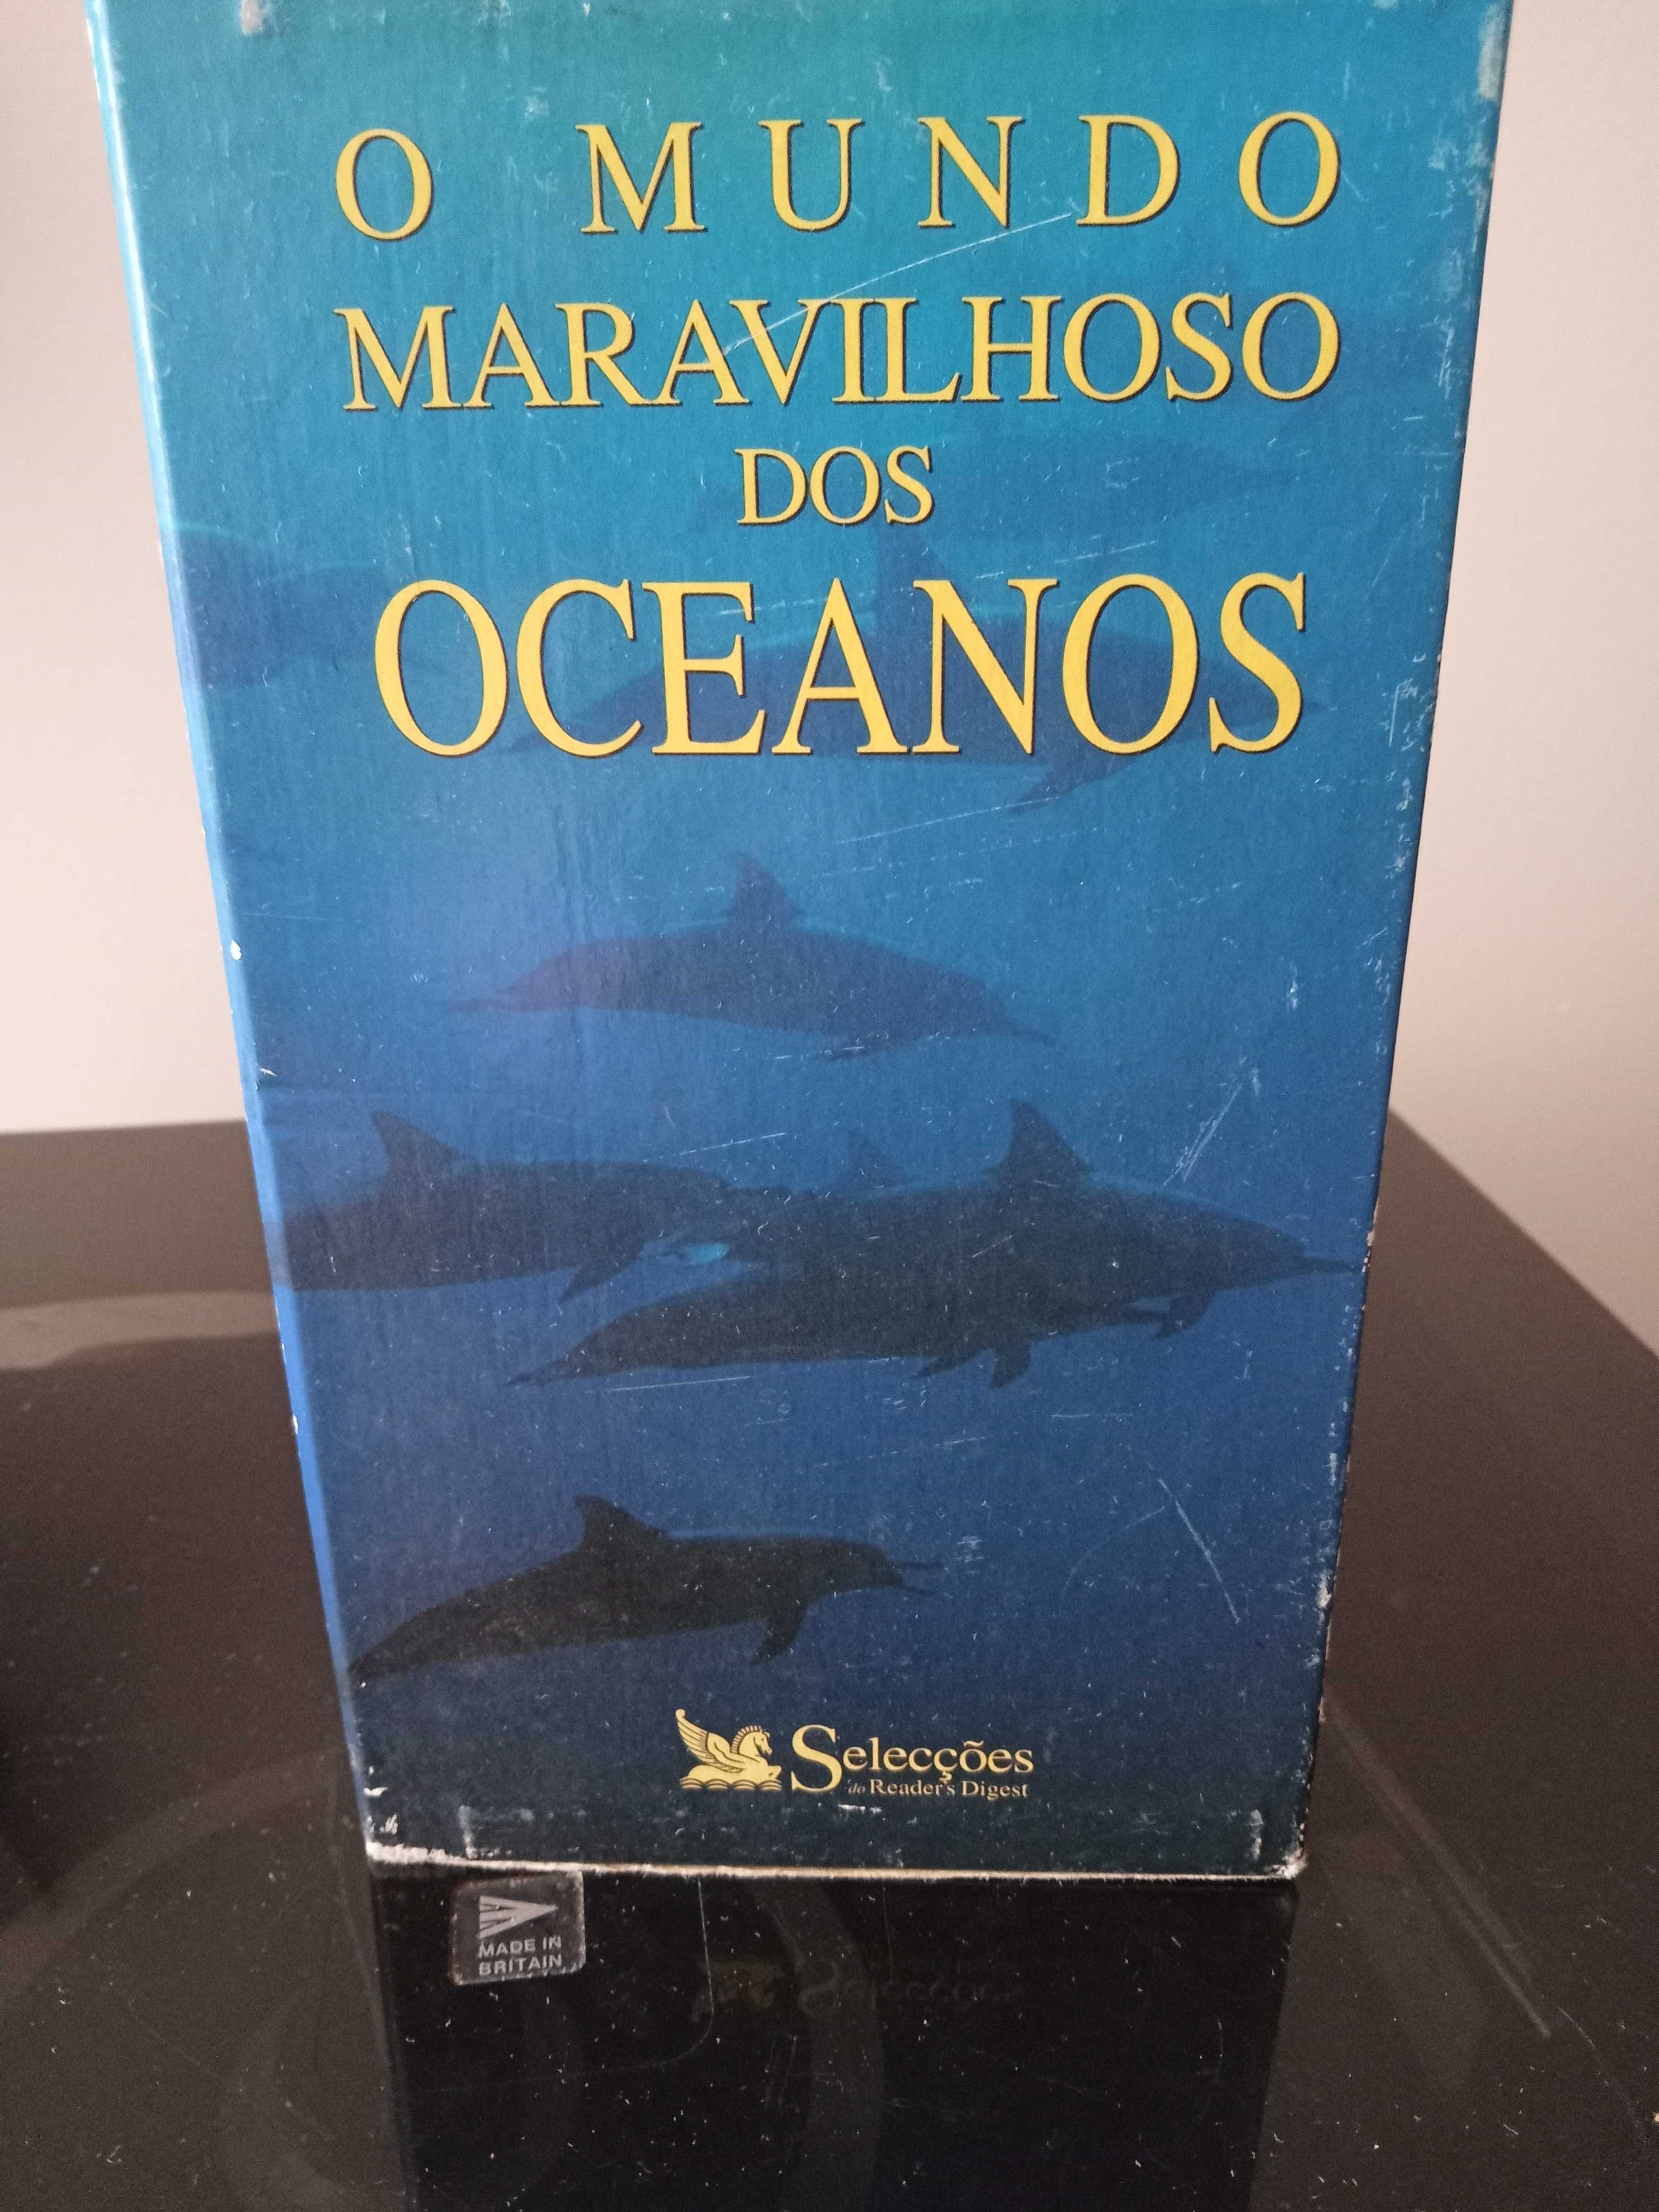 O Mundo Maravilhoso dos Oceanos- 3 cassetes VHS